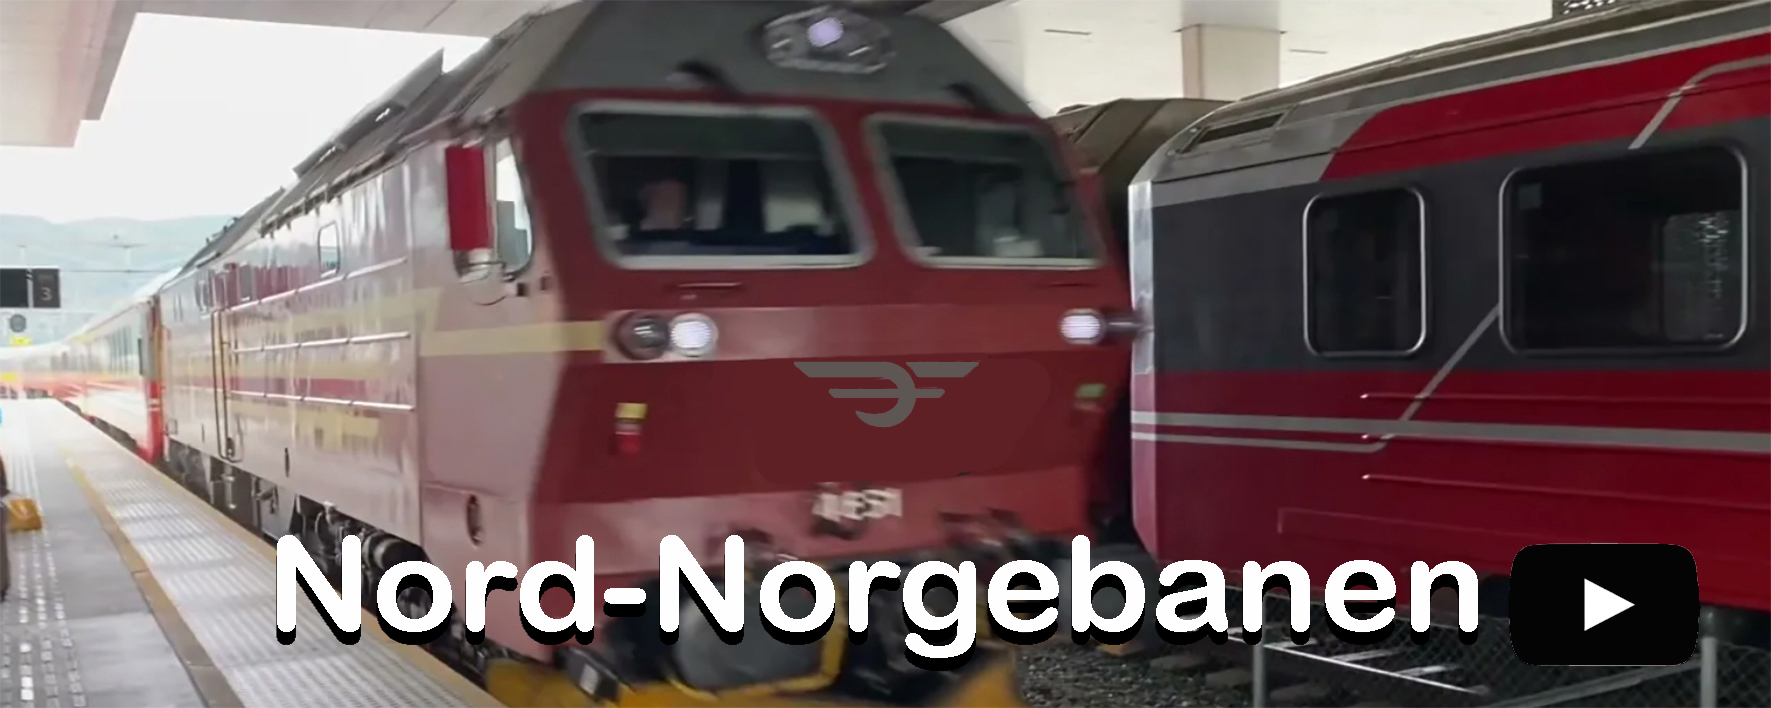 Nord-Norgebanen